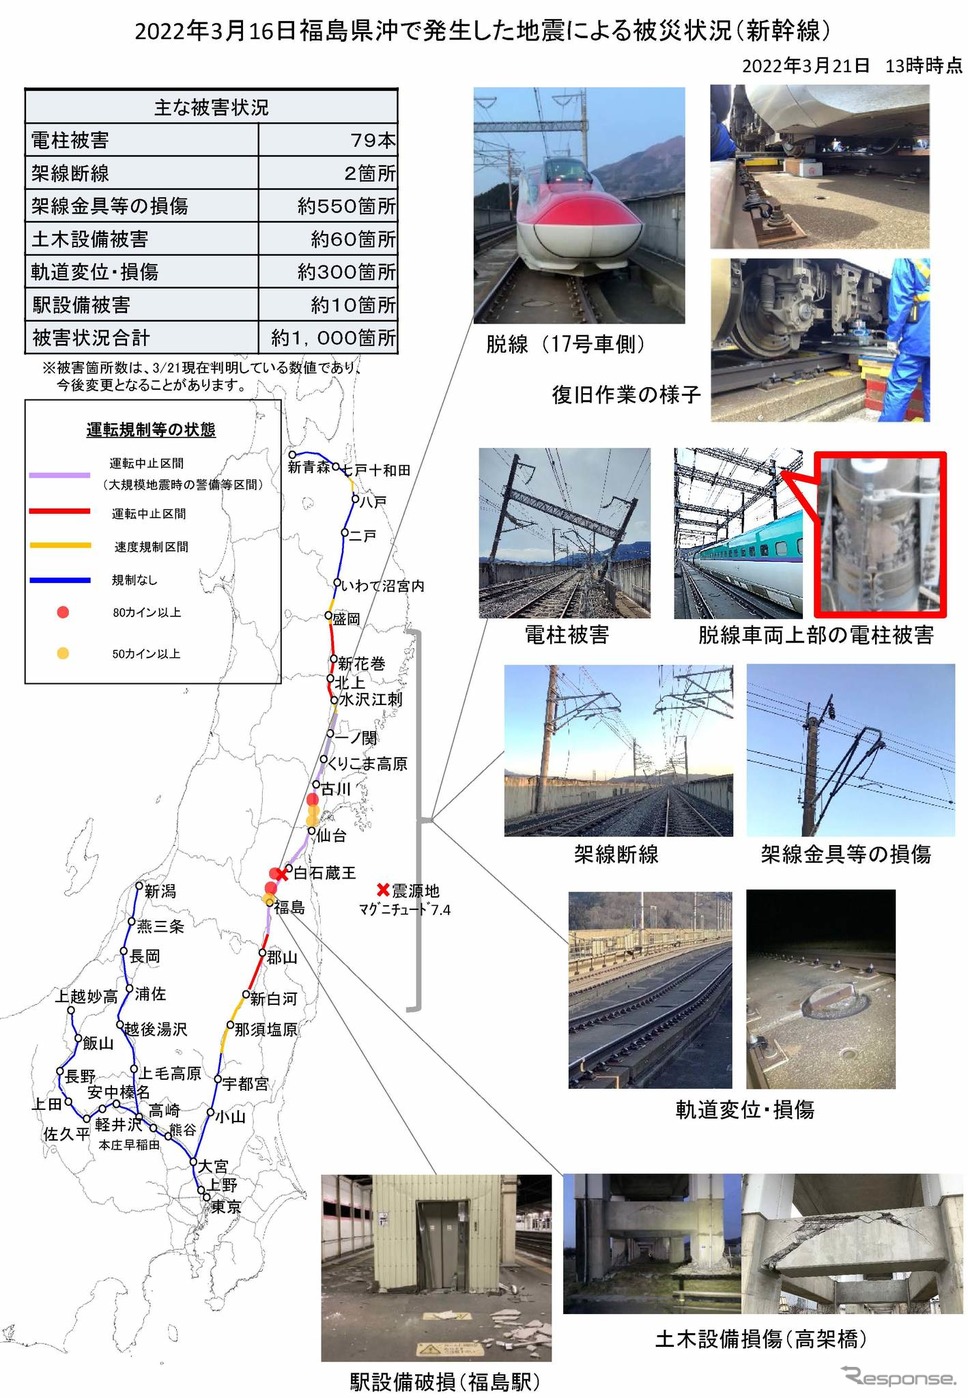 3月21日13時時点の被災状況。新たに脱線車両上部の電柱に被害が確認されている。《資料提供 東日本旅客鉄道》